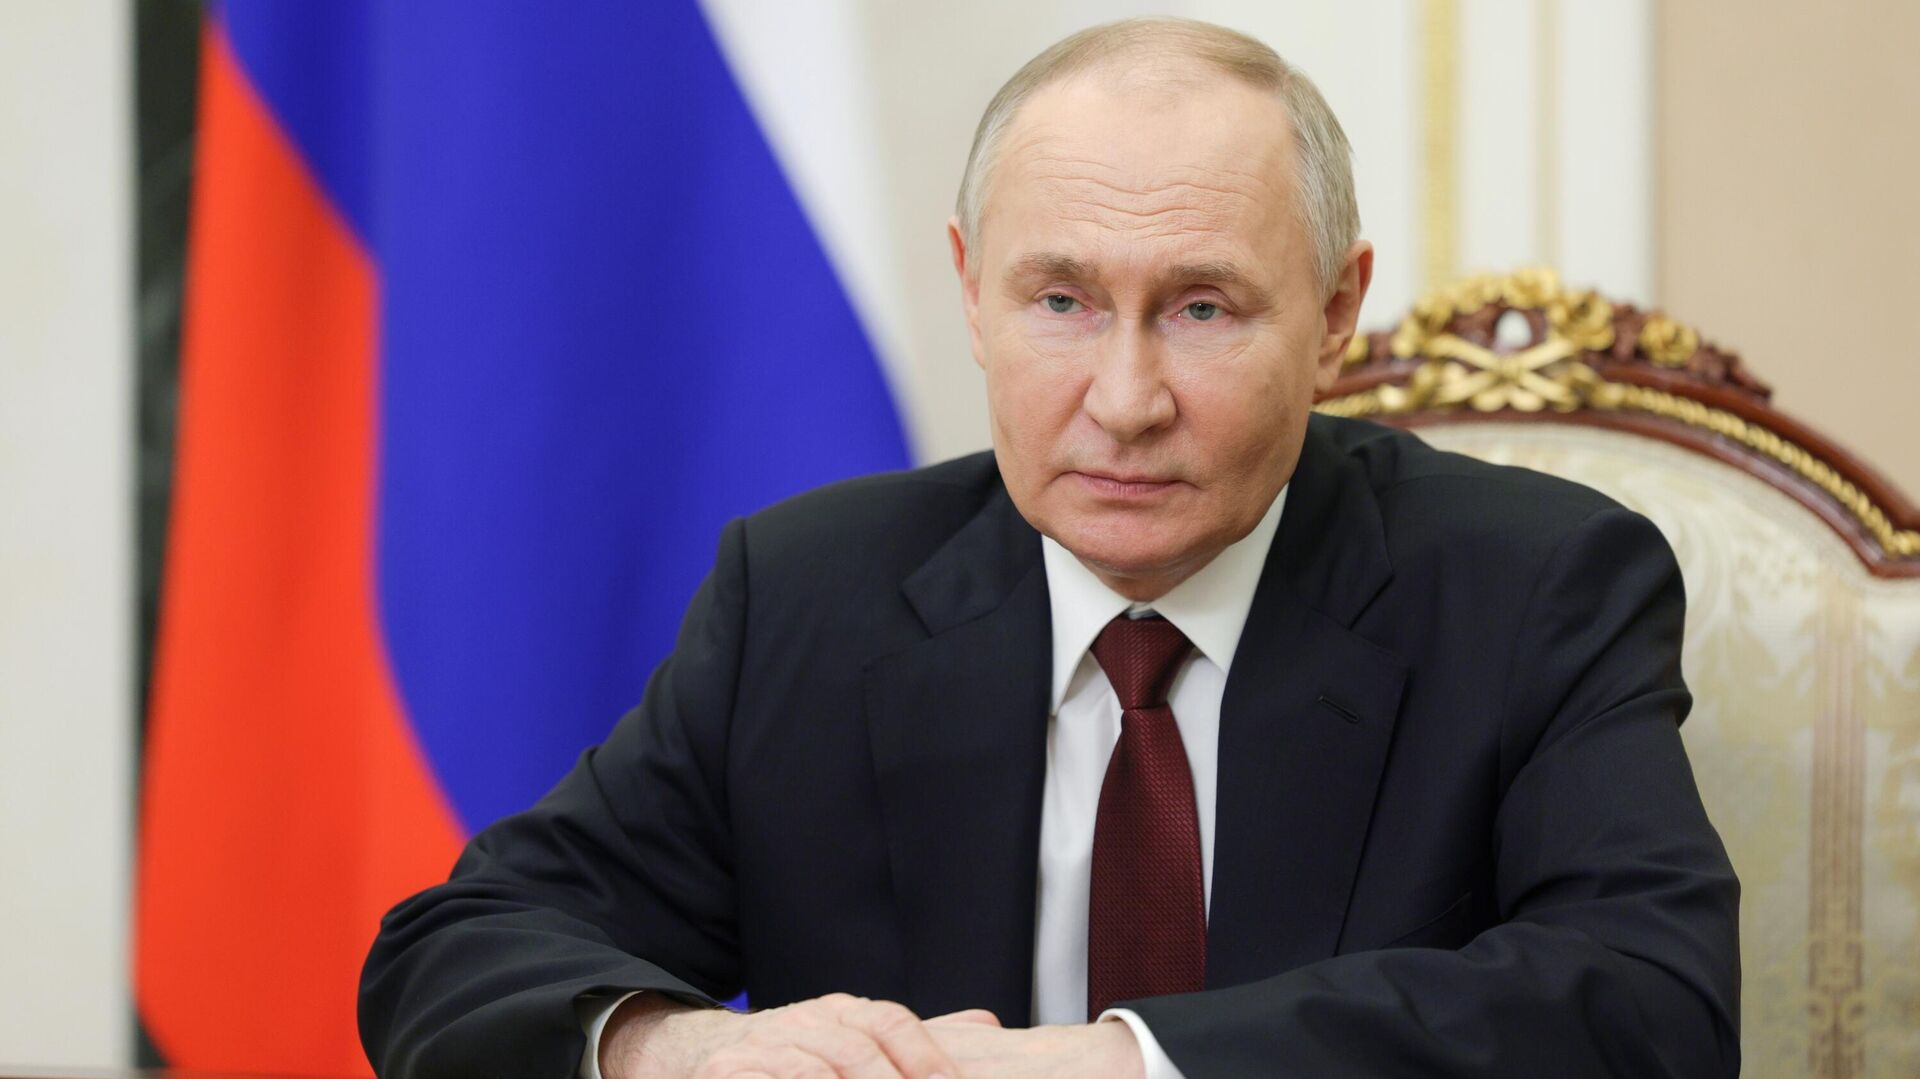 پوتین: روسیه هرگز از مذاکره درباره مسئله اوکراین امتناع نکرده است